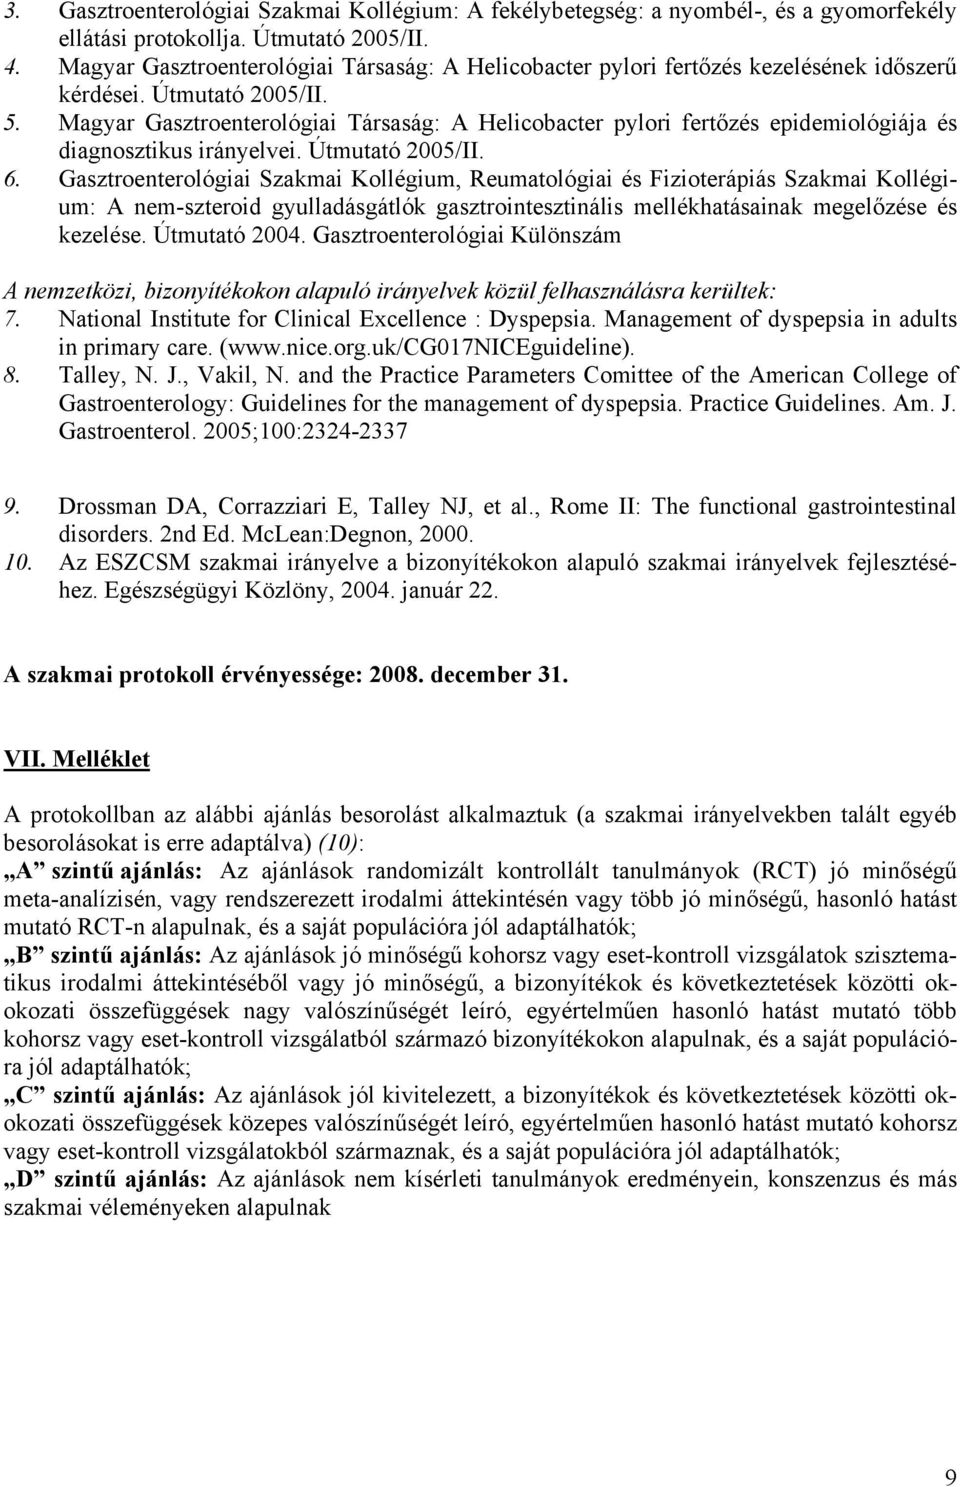 Magyar Gasztroenterológiai Társaság: A Helicobacter pylori fertőzés epidemiológiája és diagnosztikus irányelvei. Útmutató 2005/II. 6.